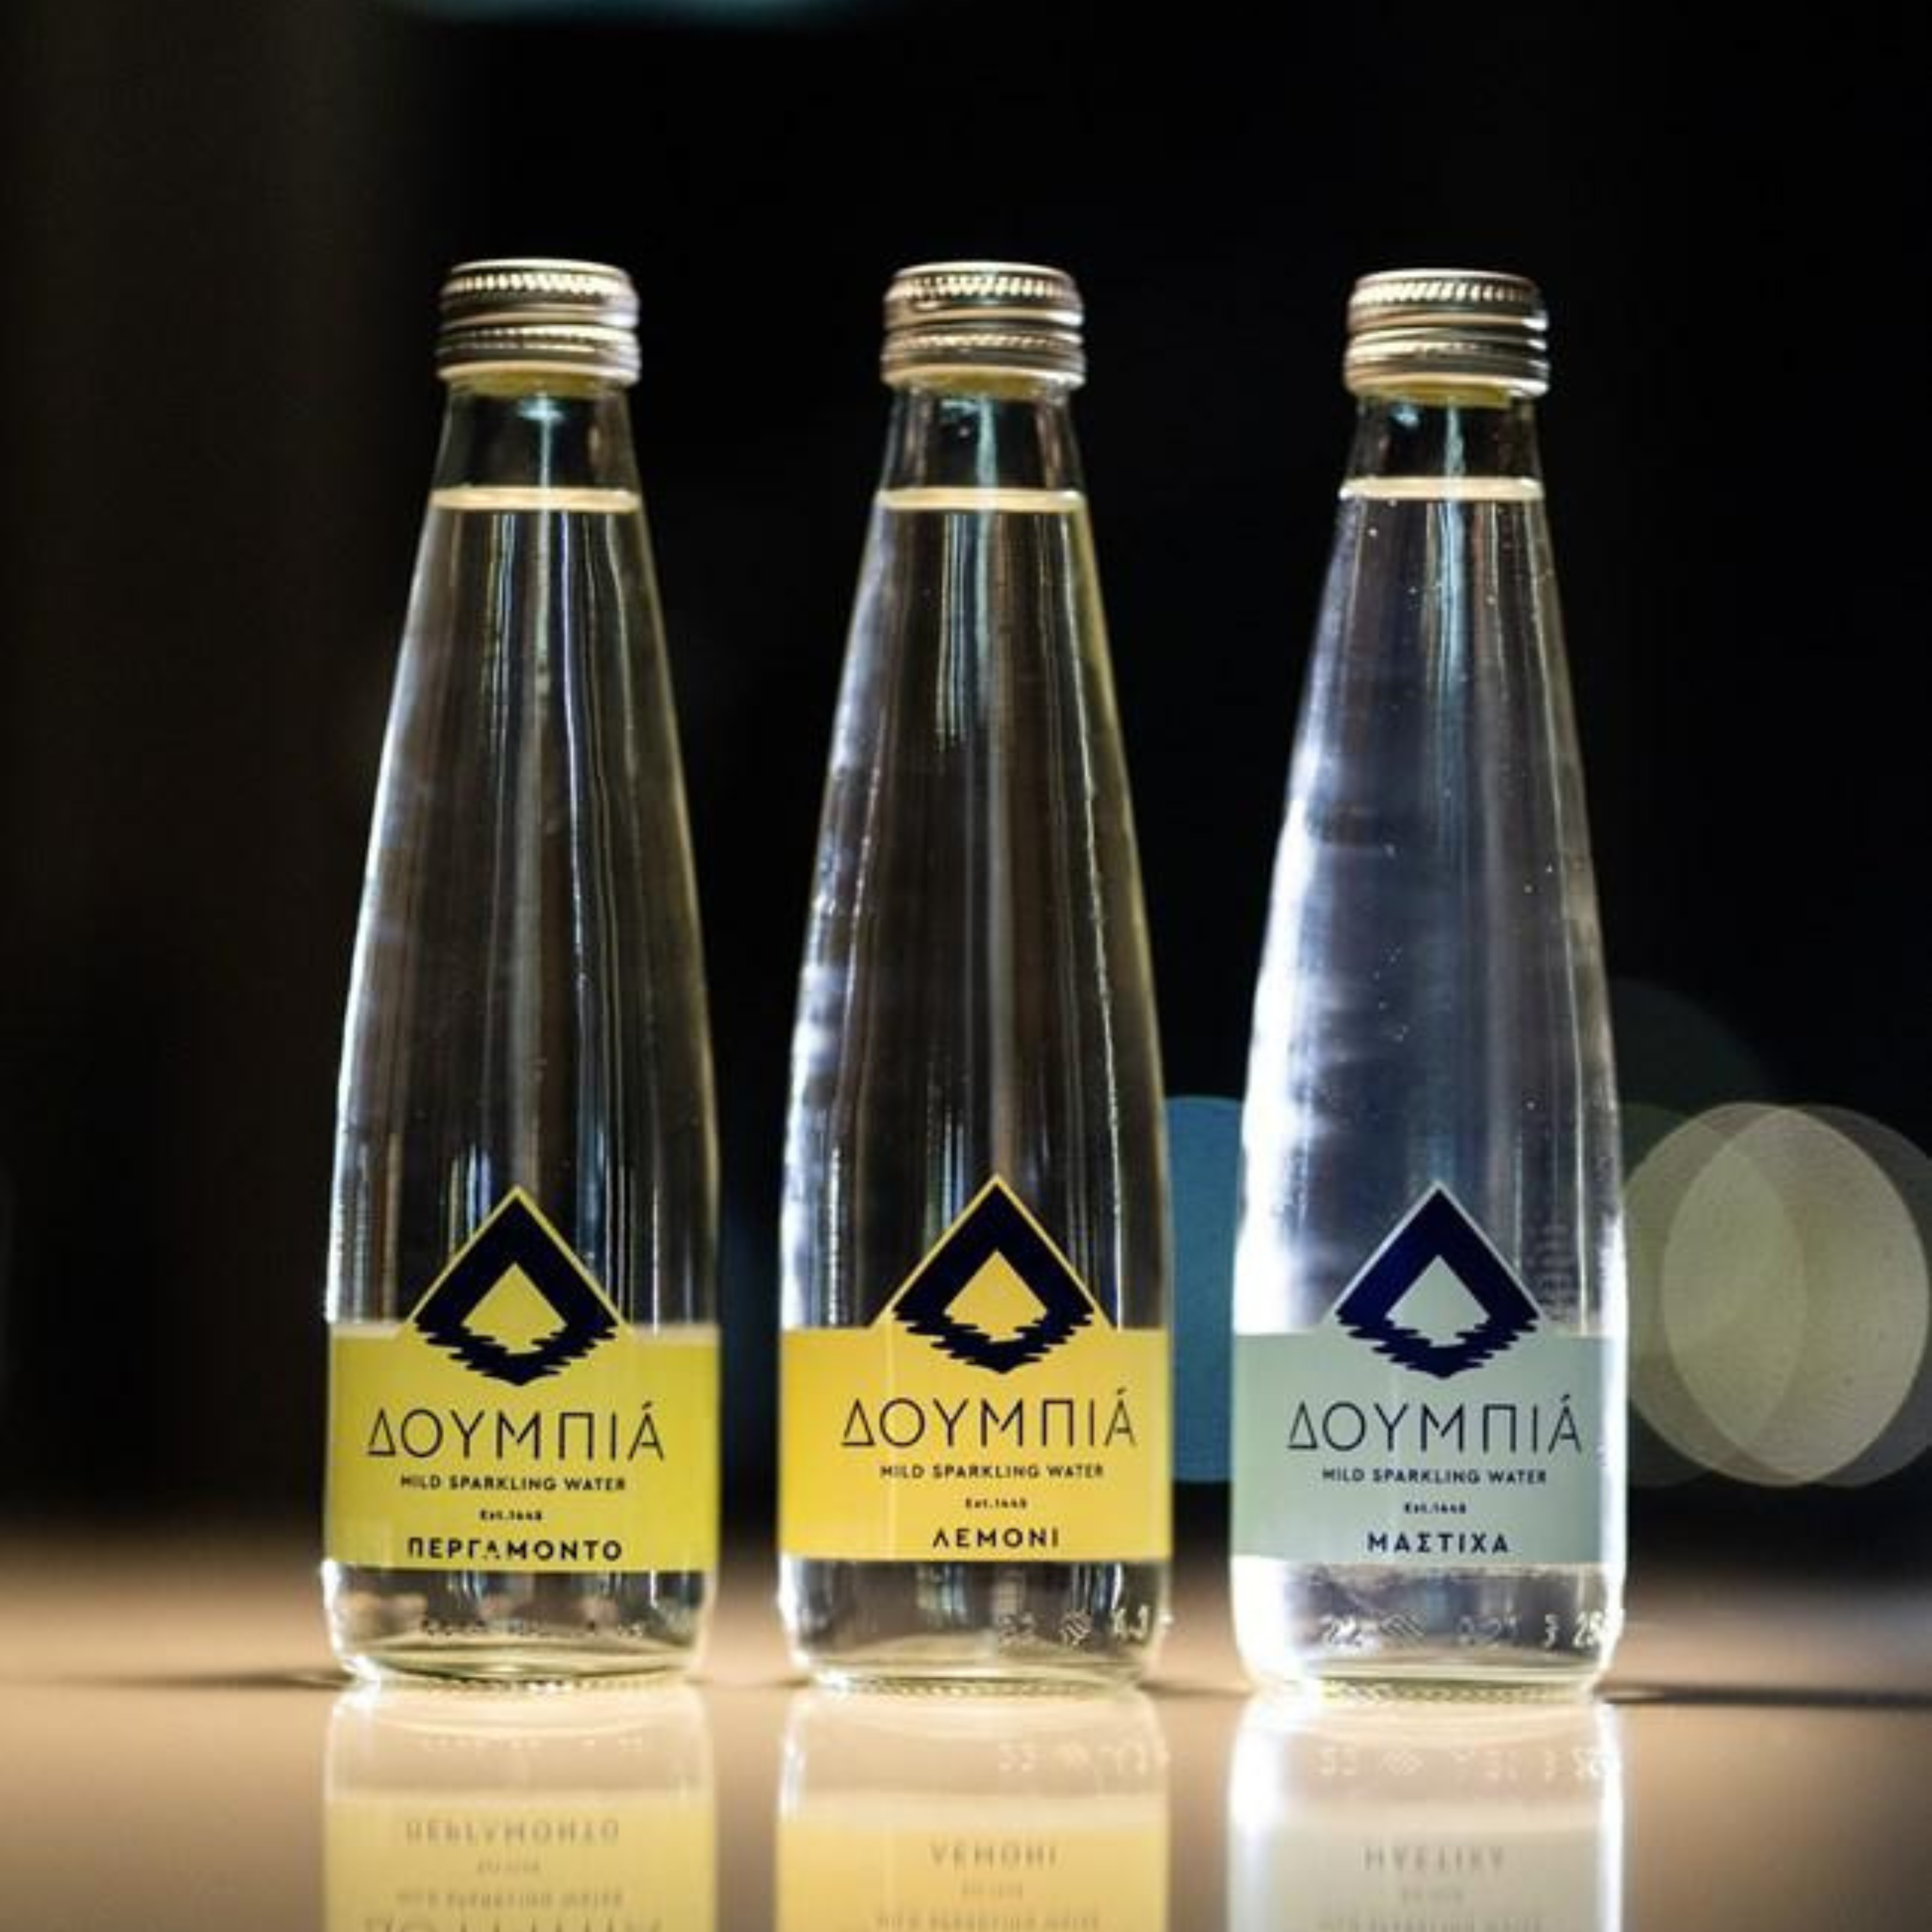 DOUMPIA — Sprudelwasser mit Zitronengeschmack, 250ml